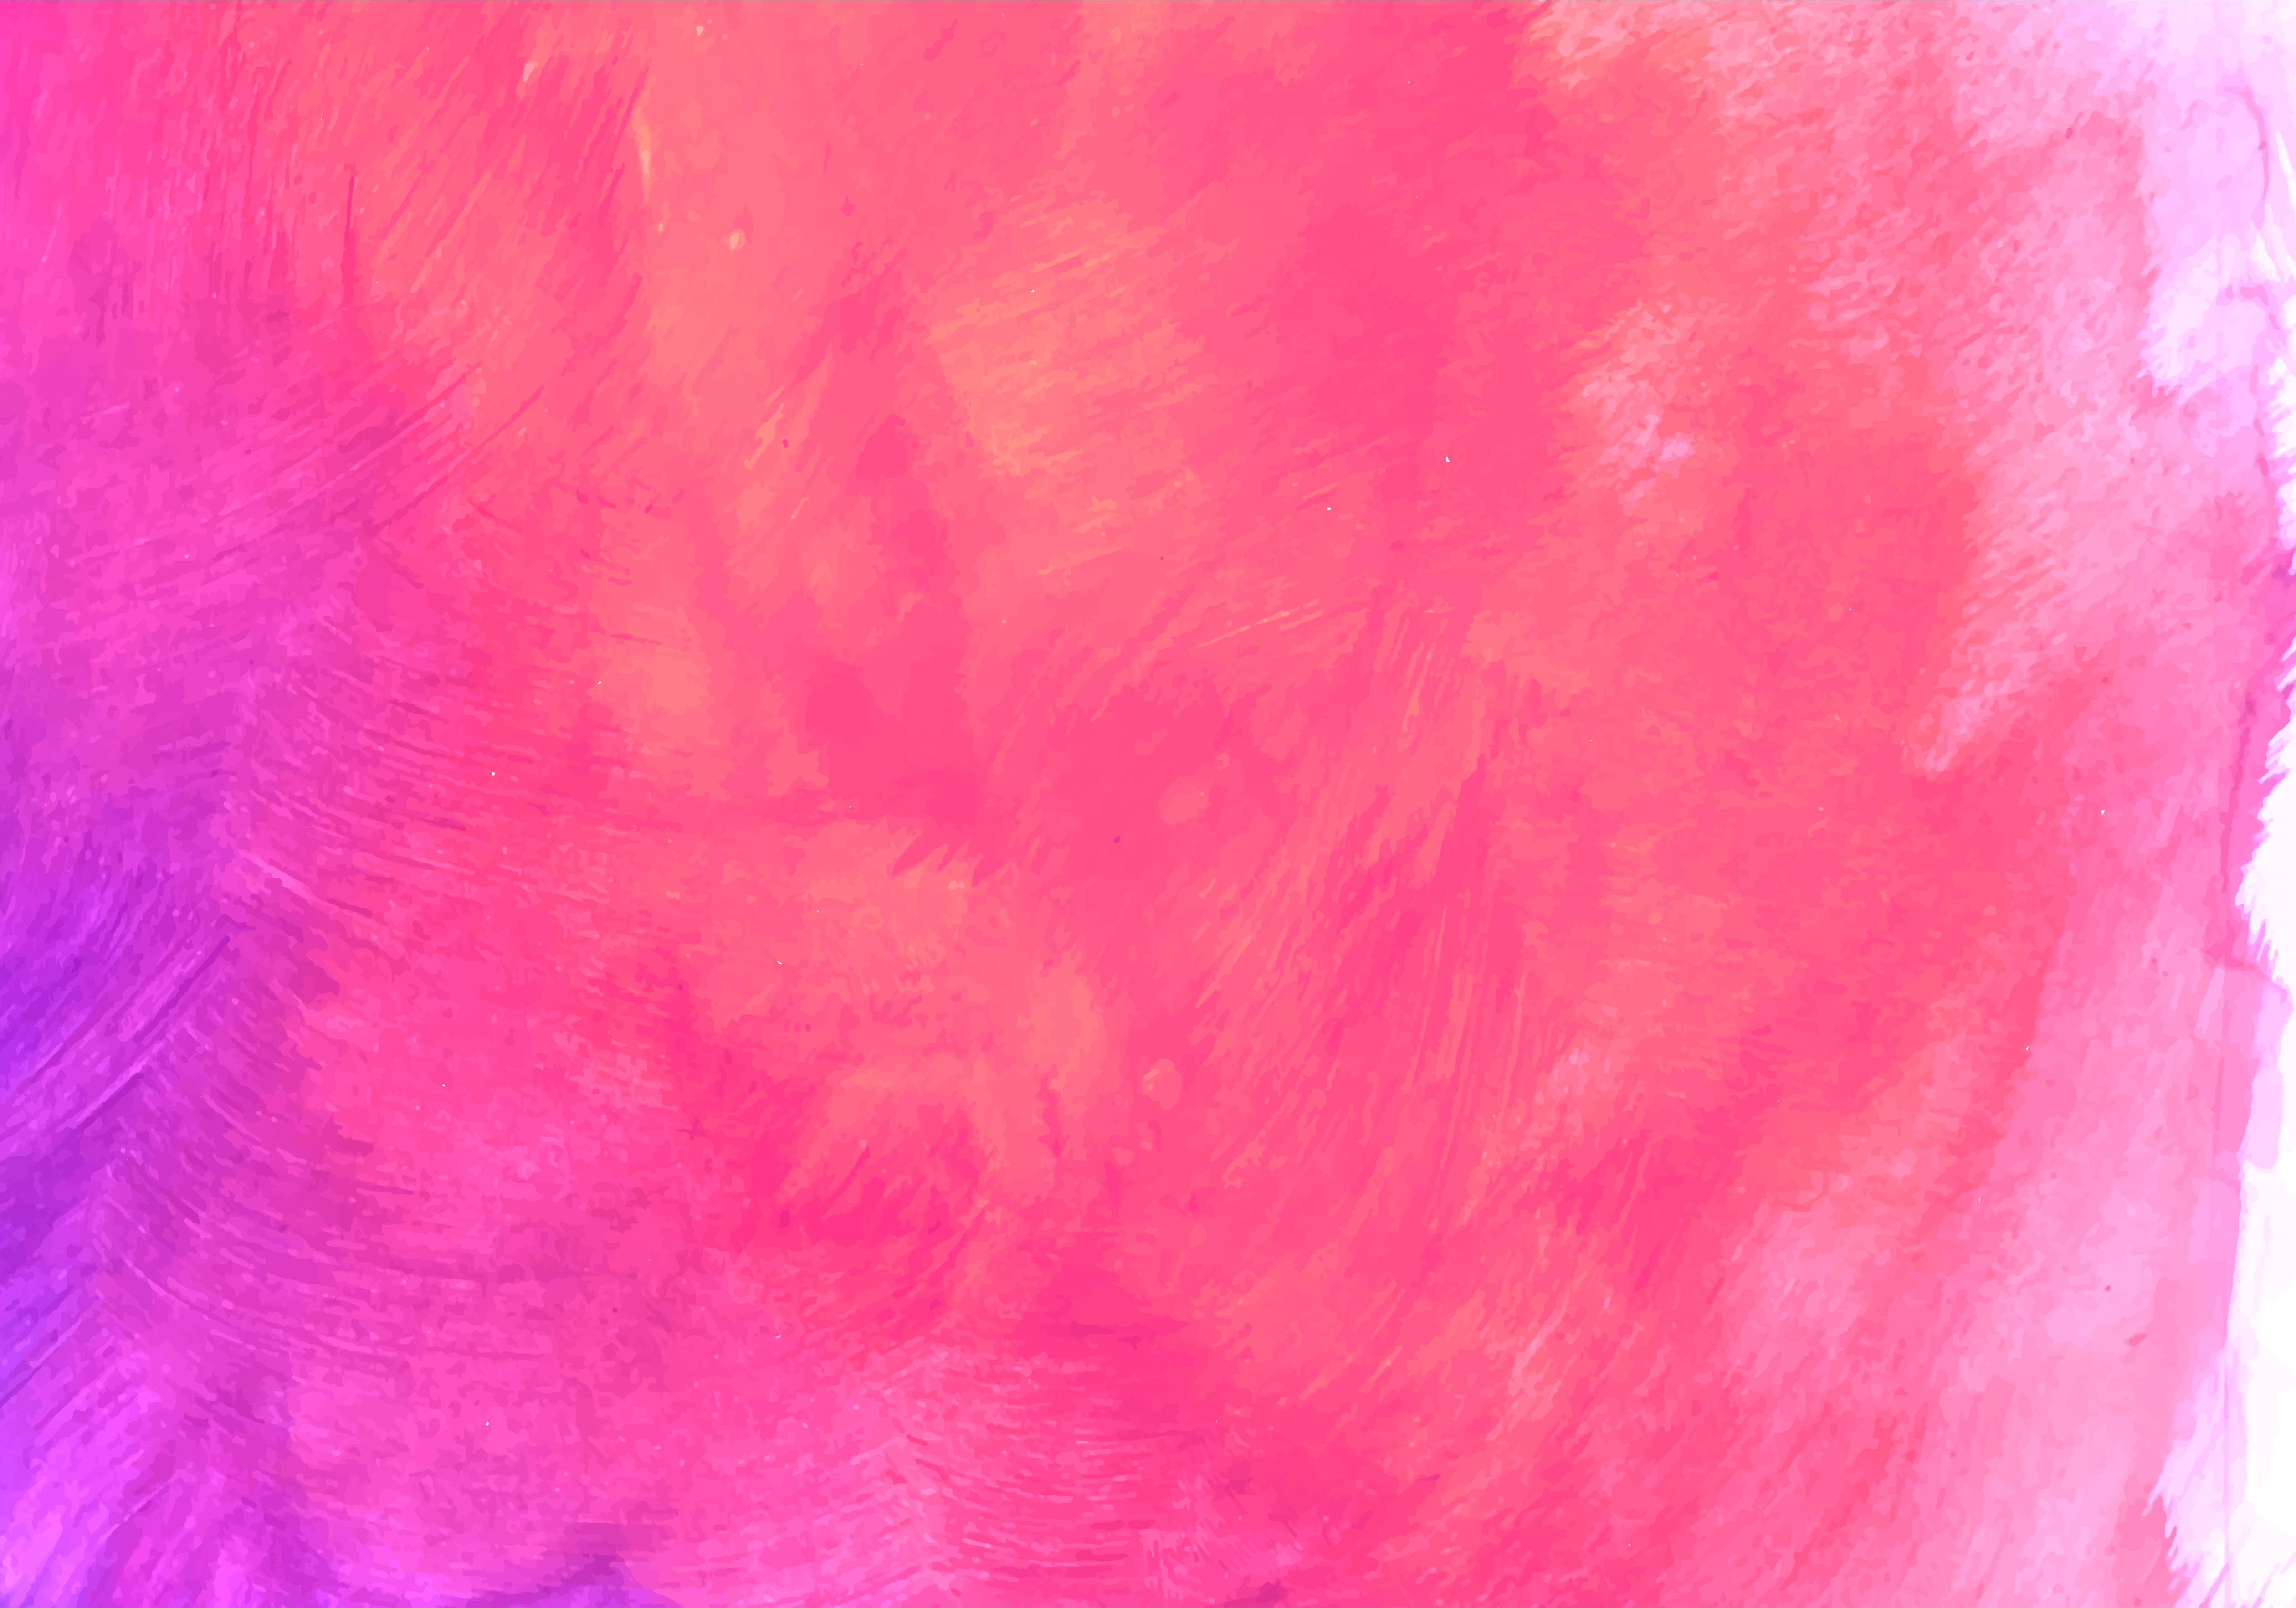 Pink, Orange Watercolor Paint Texture Background 1225971 Vector Art at  Vecteezy